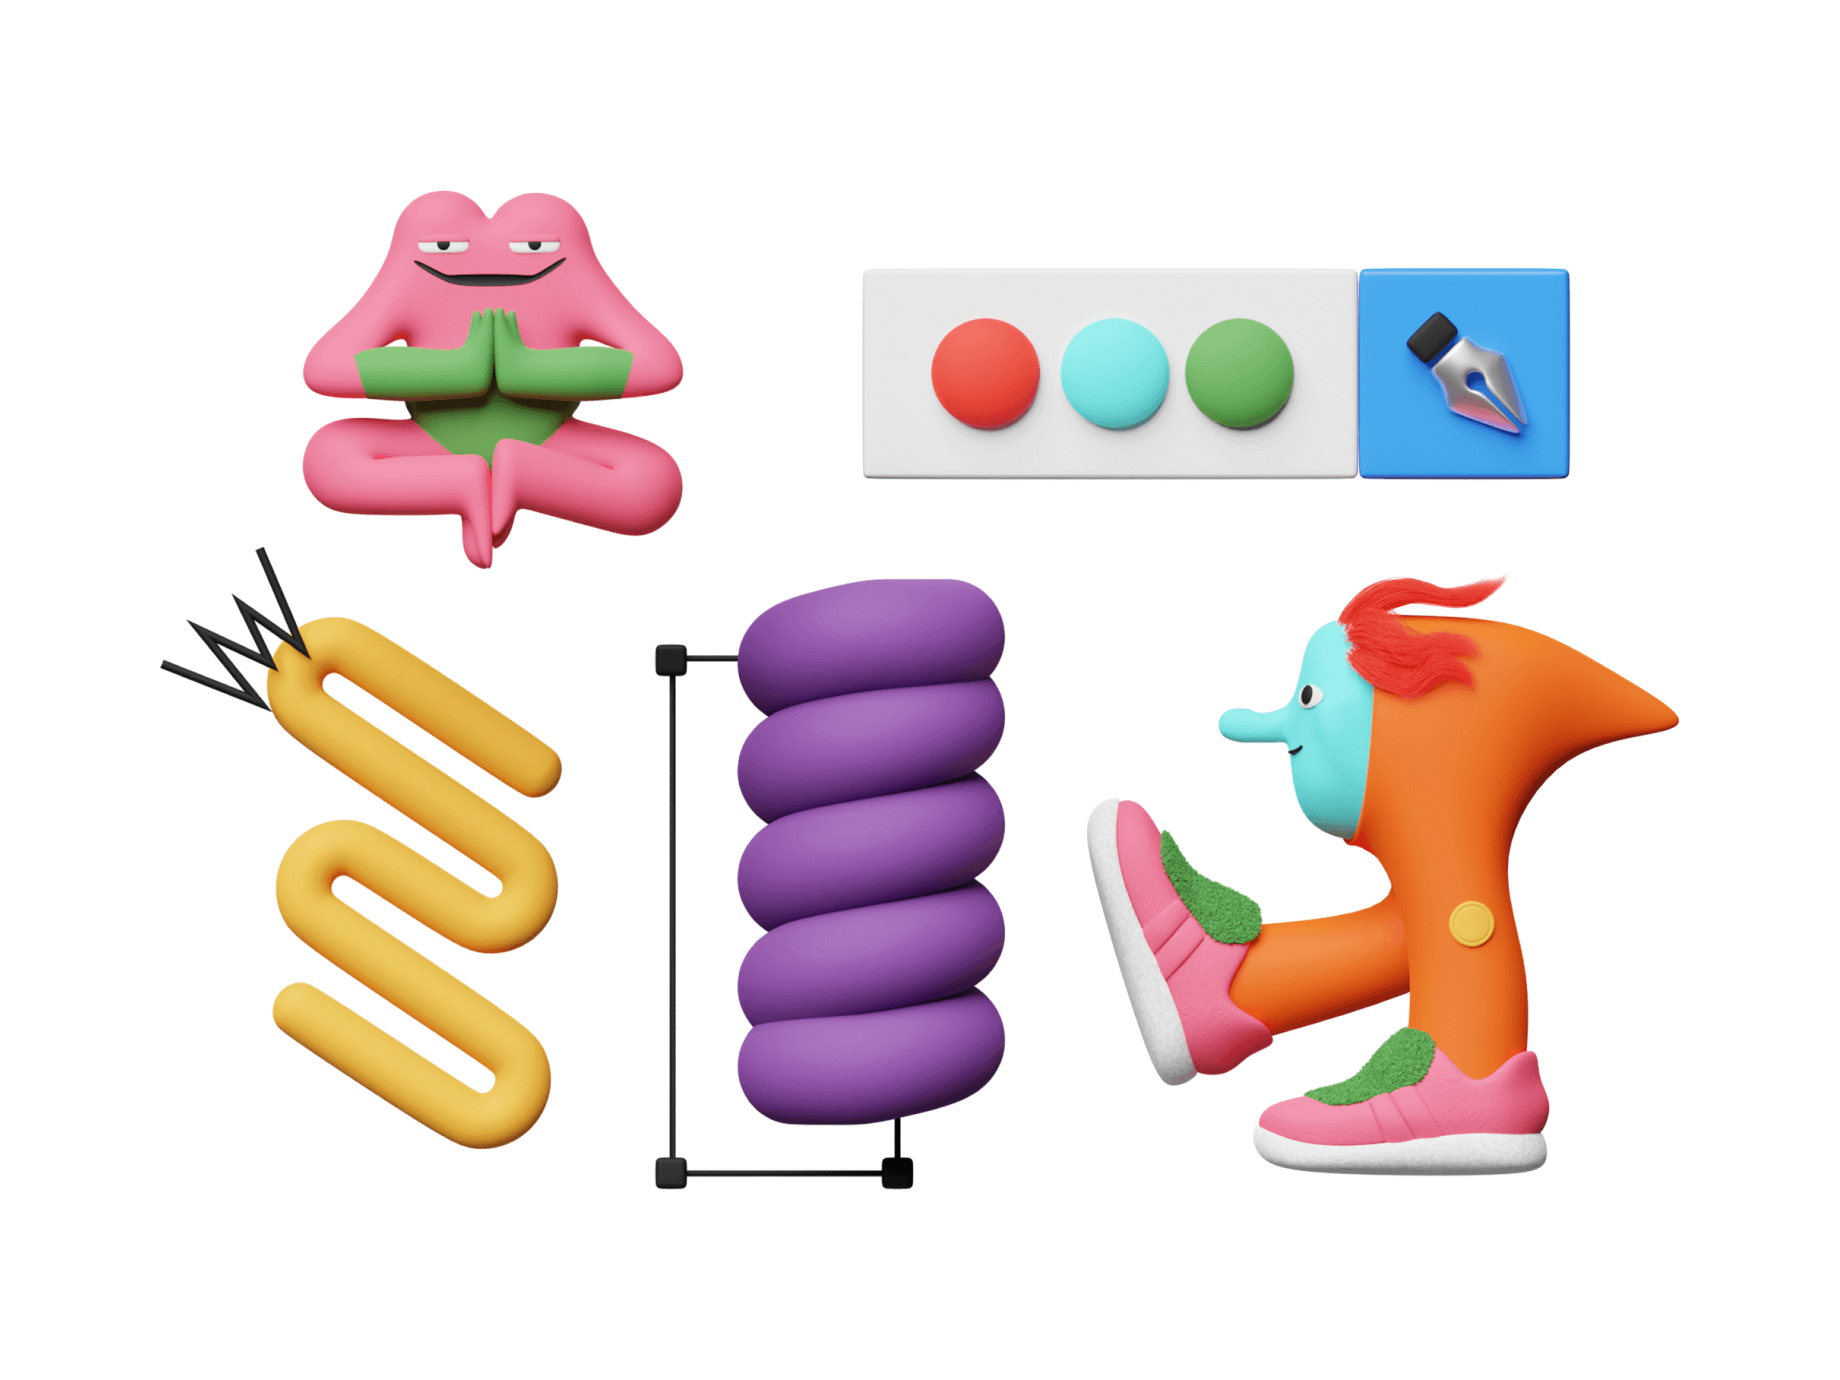 Craftwork 150多个彩色创造力趣味3D字符人物图标动画插图集 Unco 图标素材 第8张